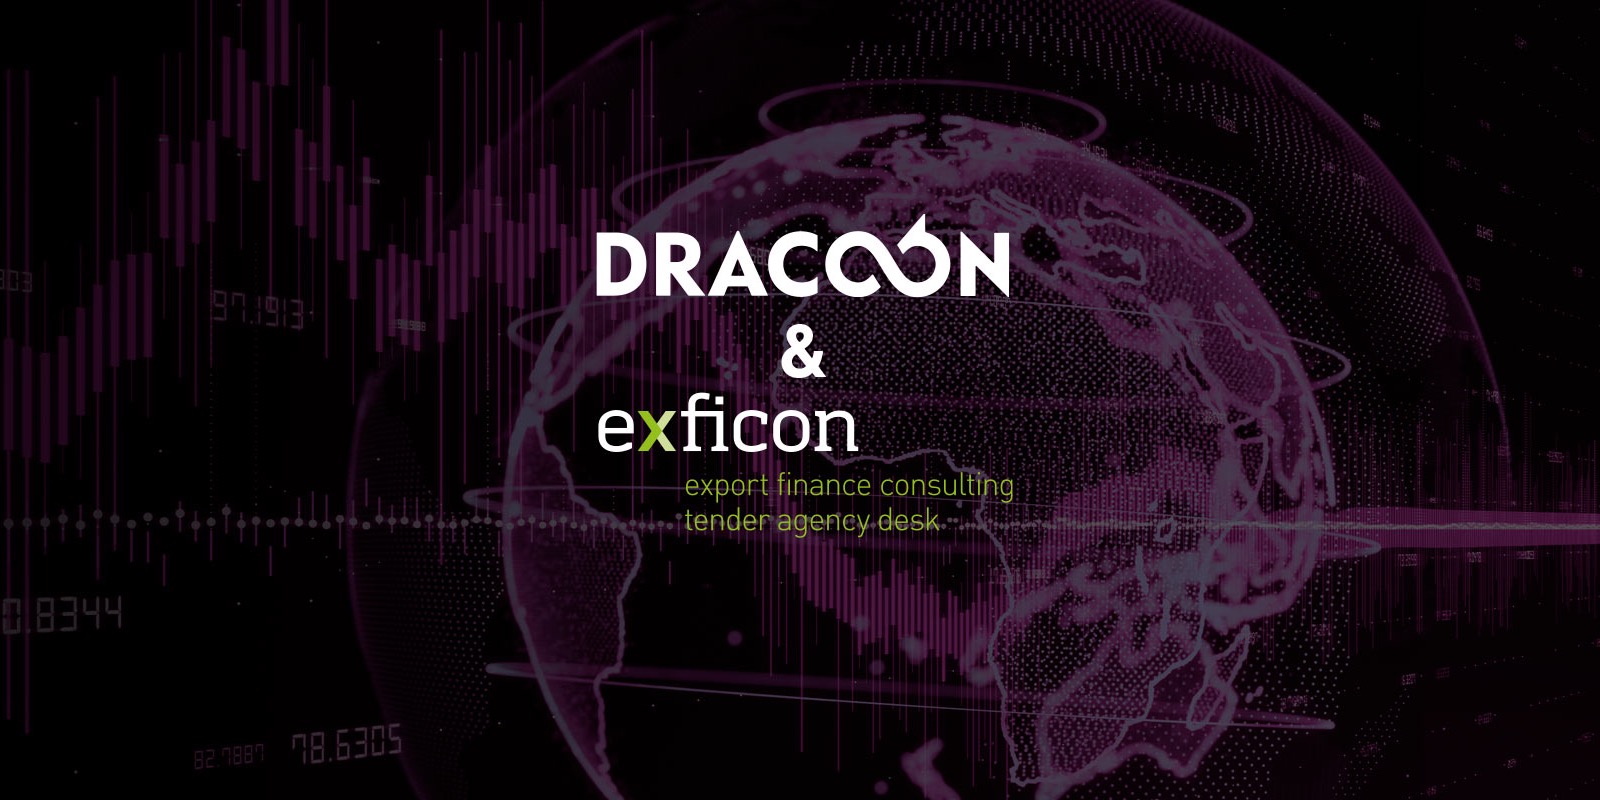 exficon digitalisiert Vergabeverfahren mit DRACOON